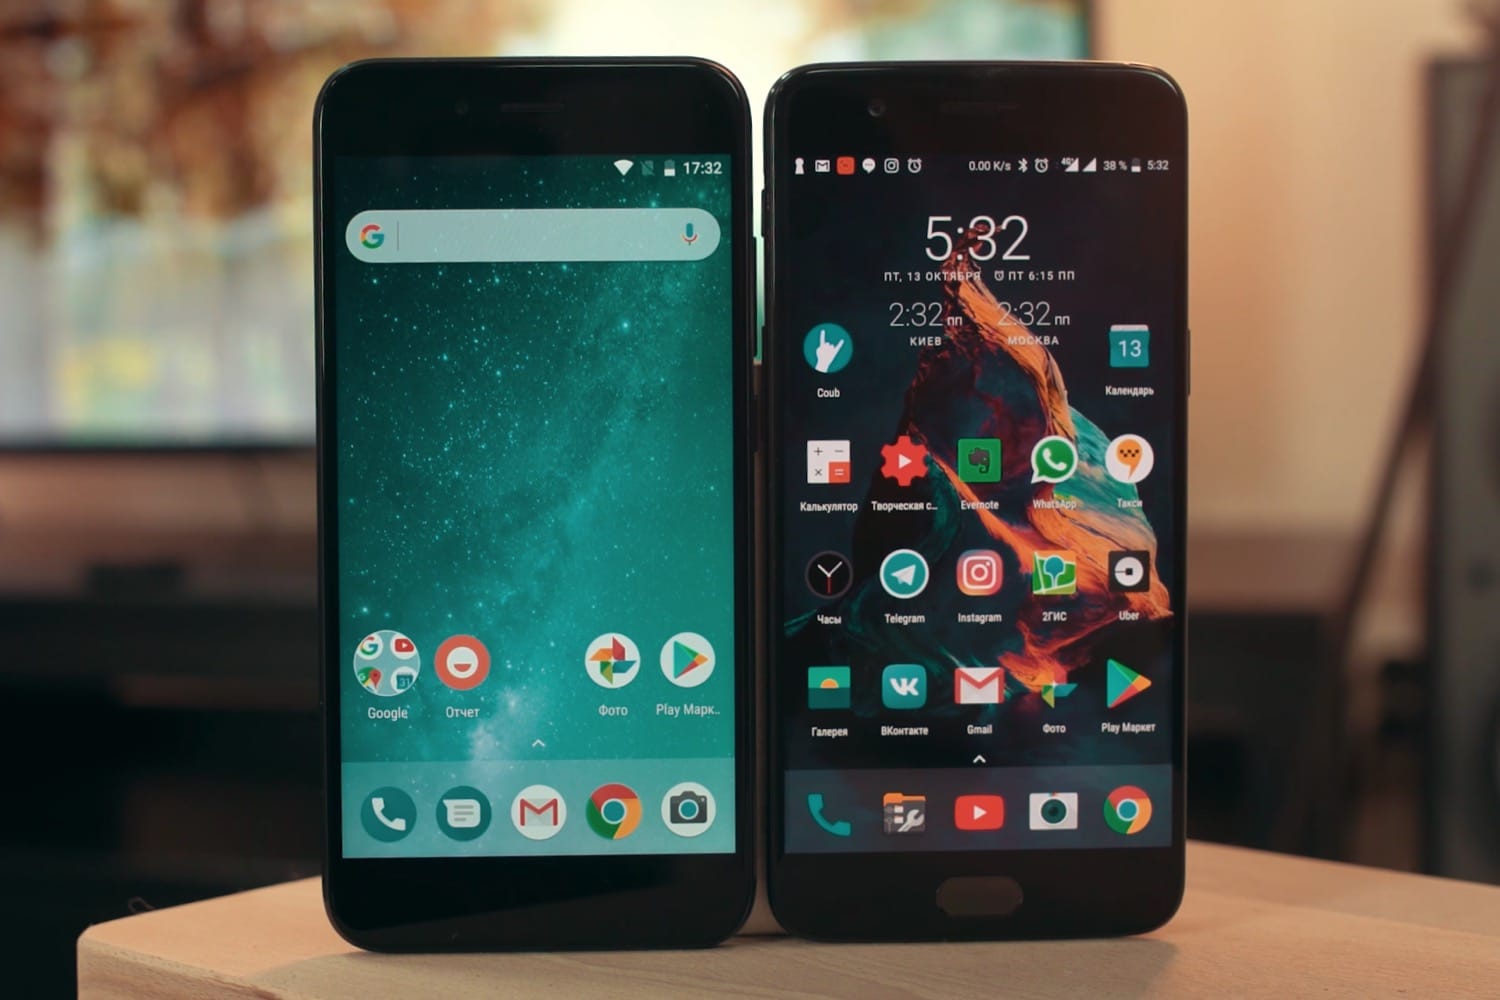 Новый android 8. Android 8. Android 8.0.0. Android 8 Oreo. Как выглядит андроид 8.